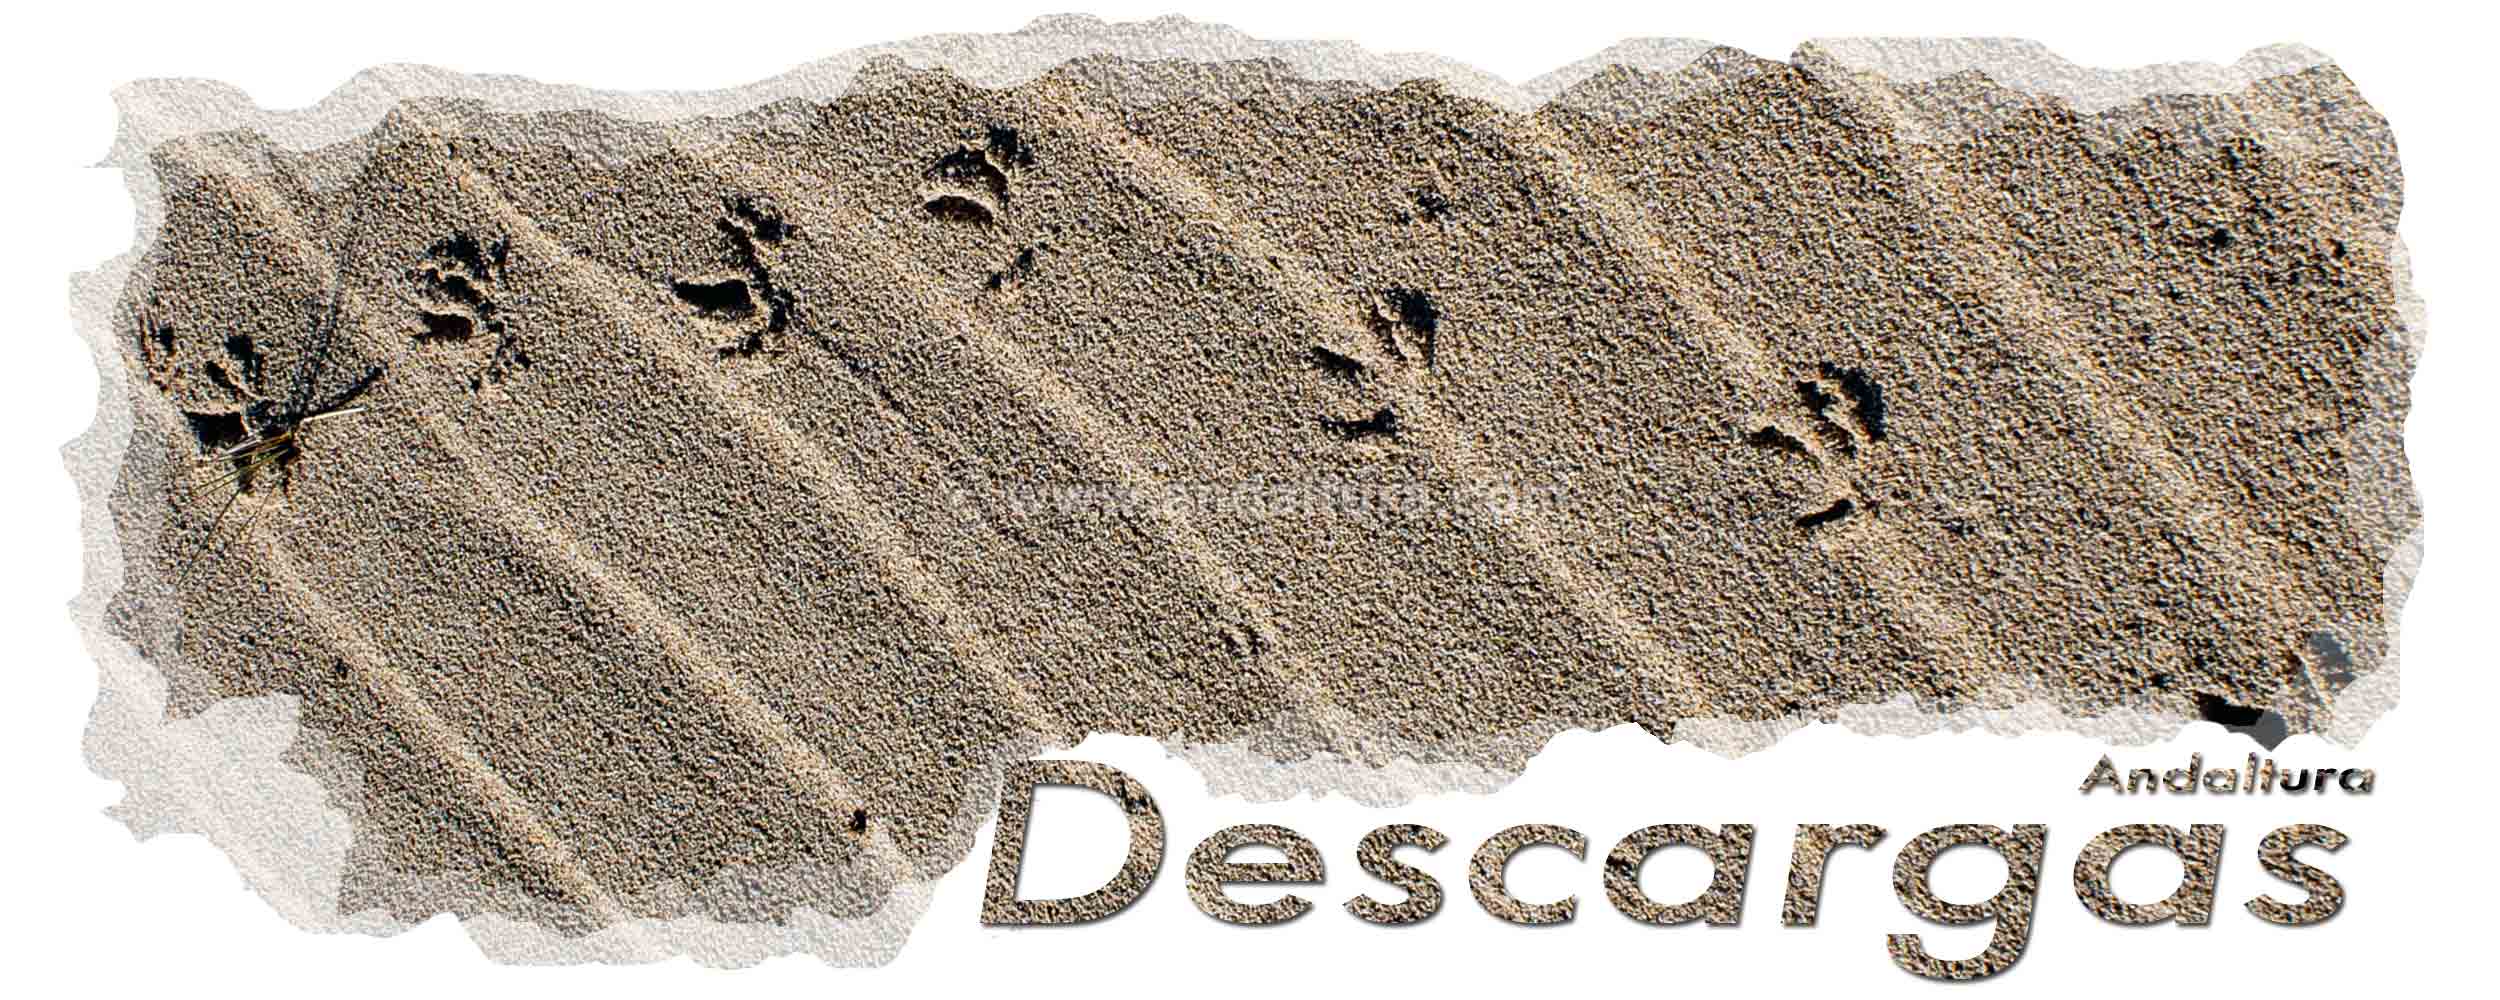 Huellas en arena de dunas en playas - Cabecera archivos de descarga de Andaltura